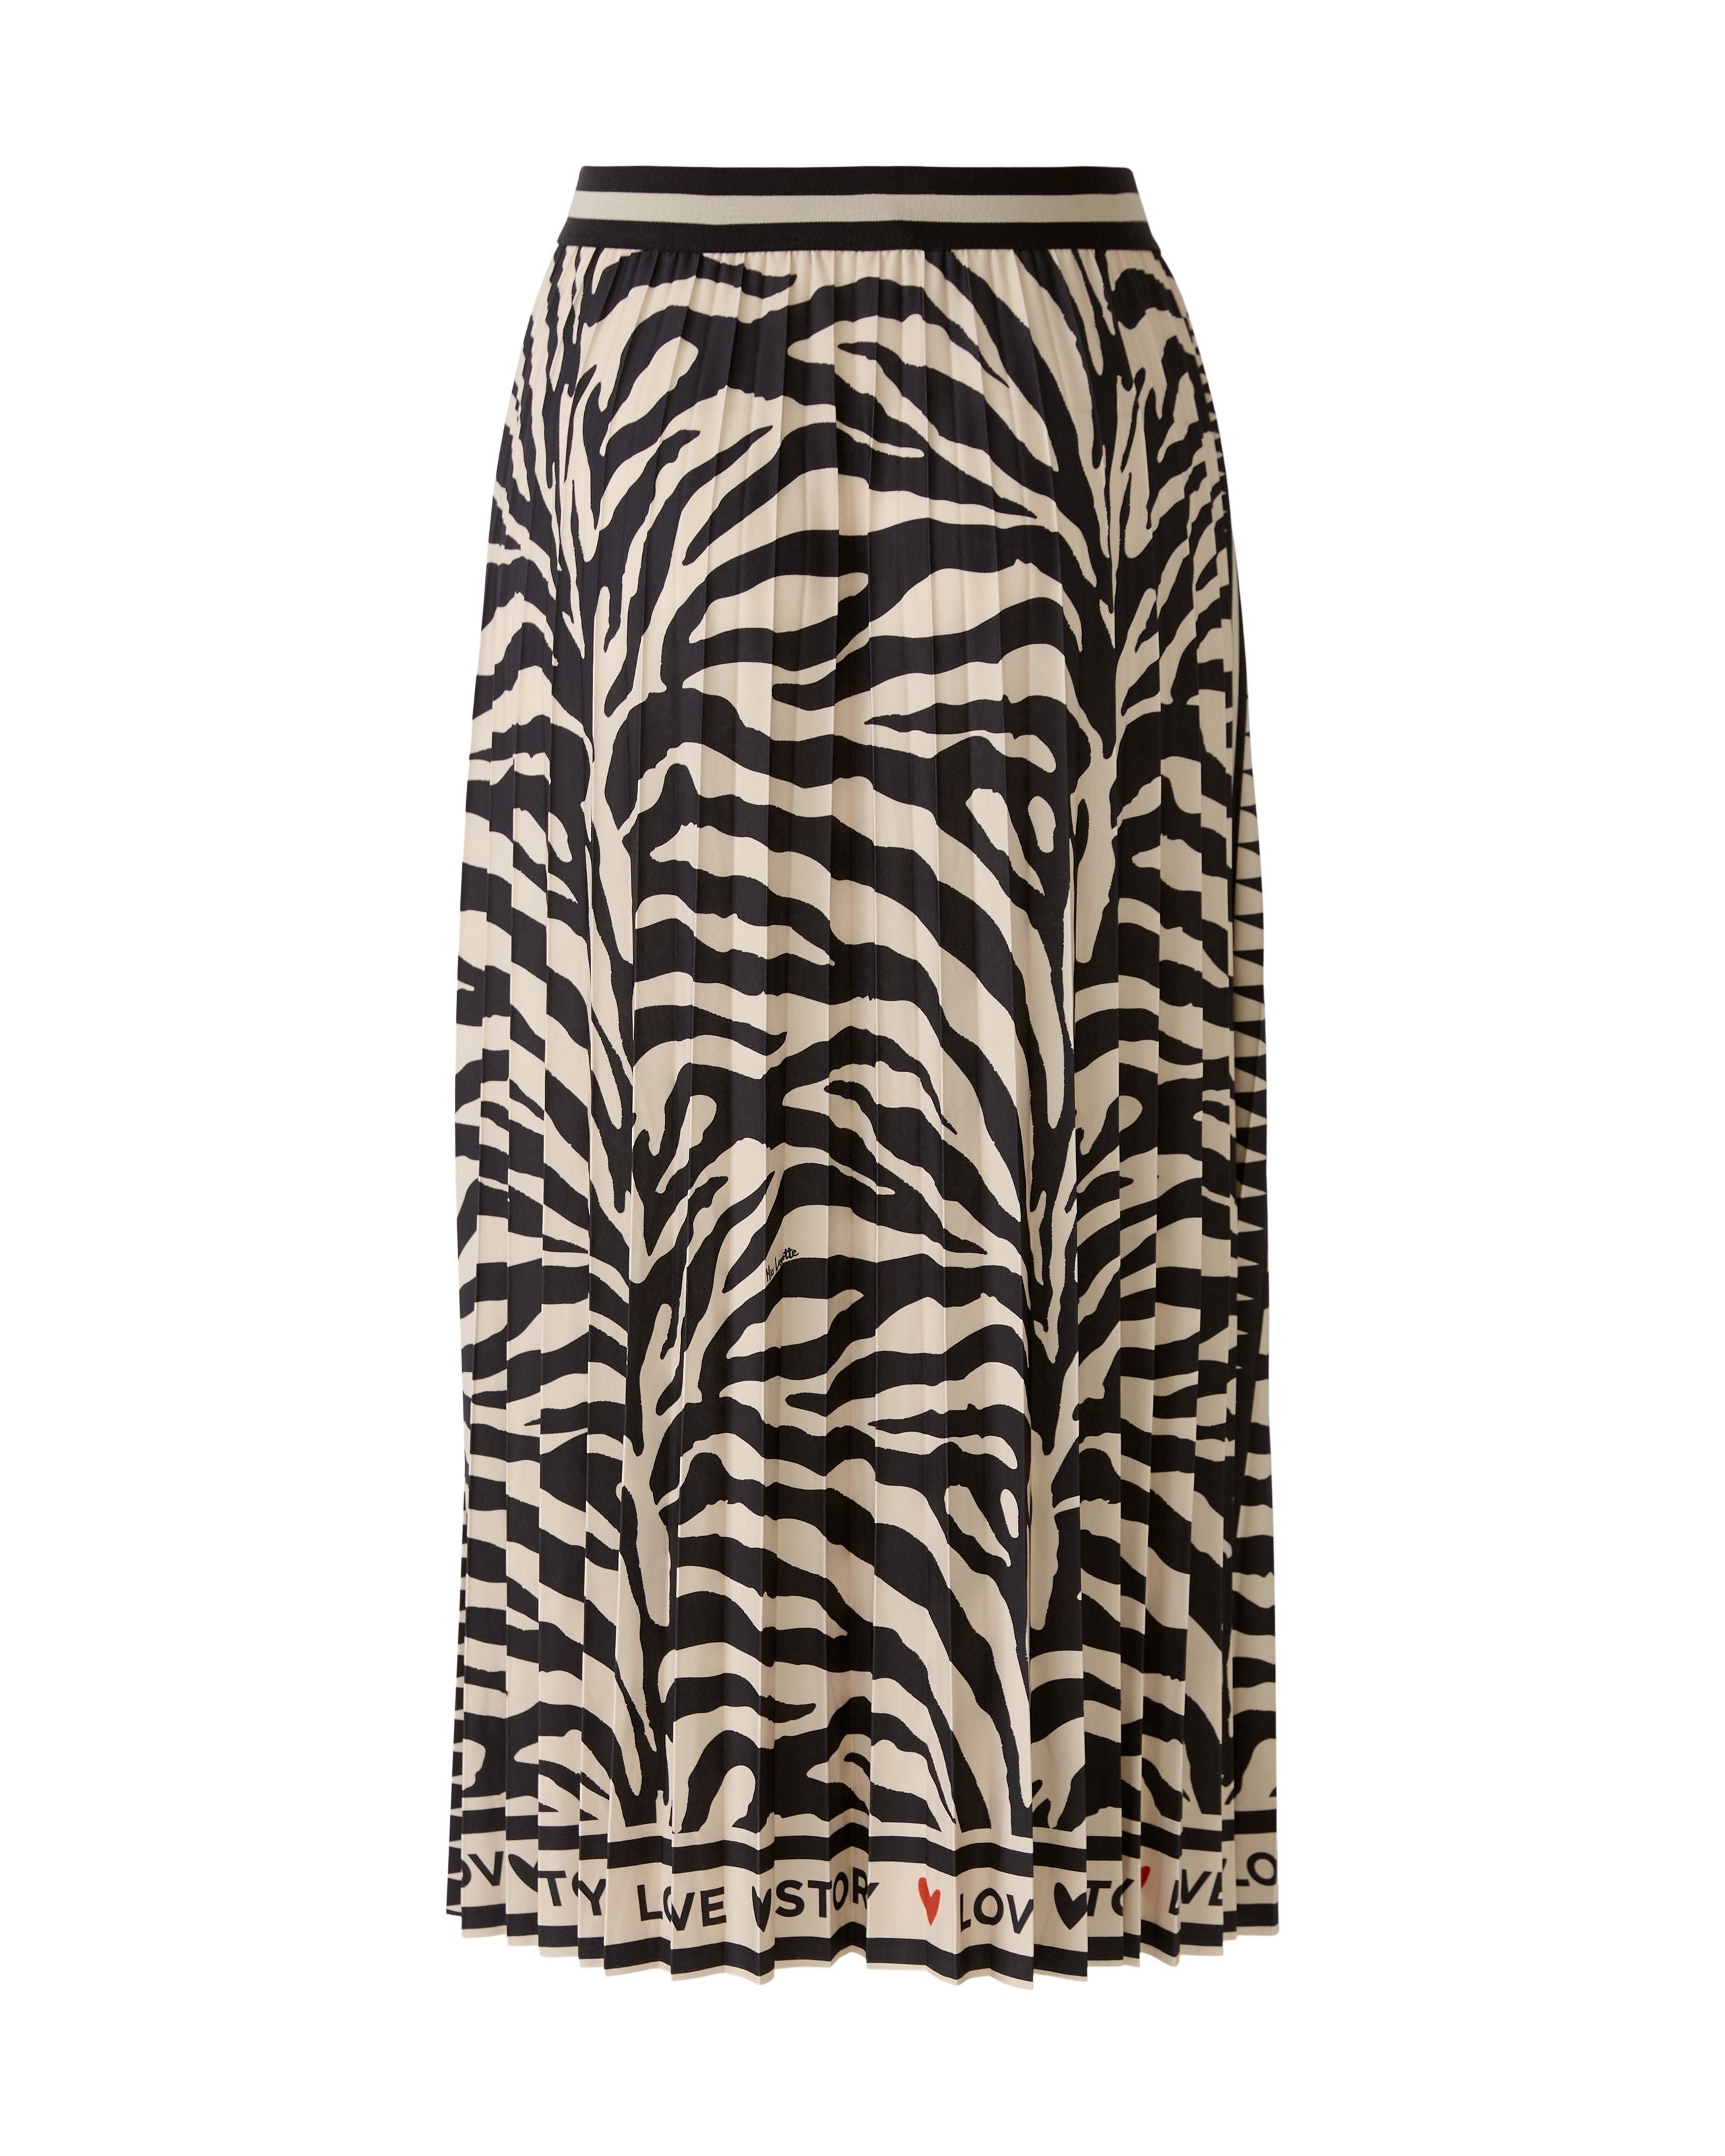 Miss Lagotte Ethnic Zebra Print Midi Skirt From The Back